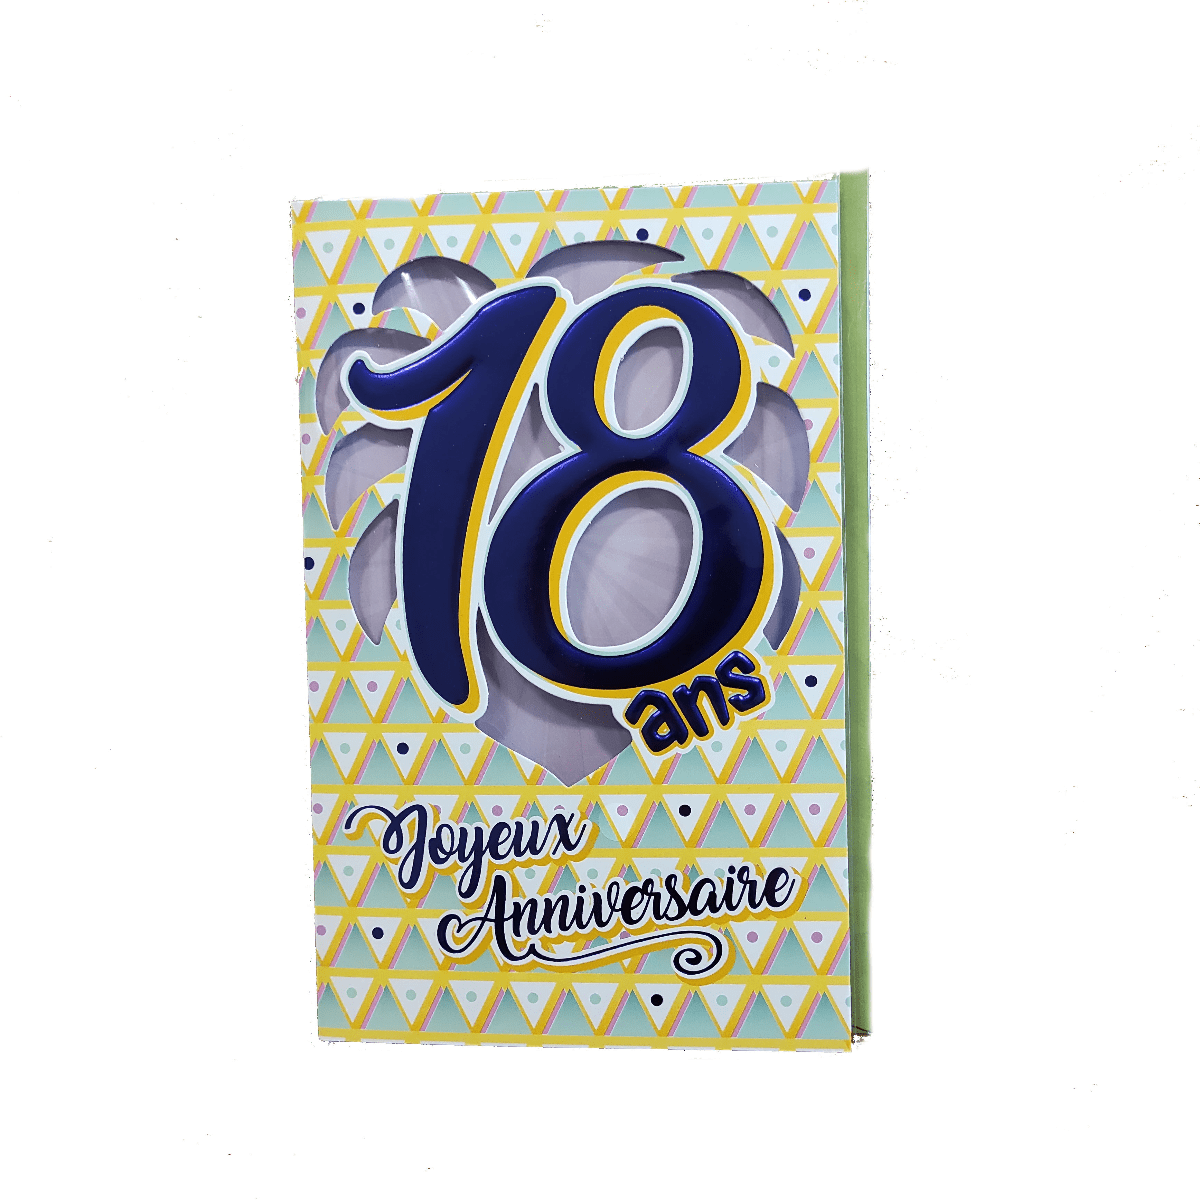 Carte anniversaire 20 ans - Méga Fête